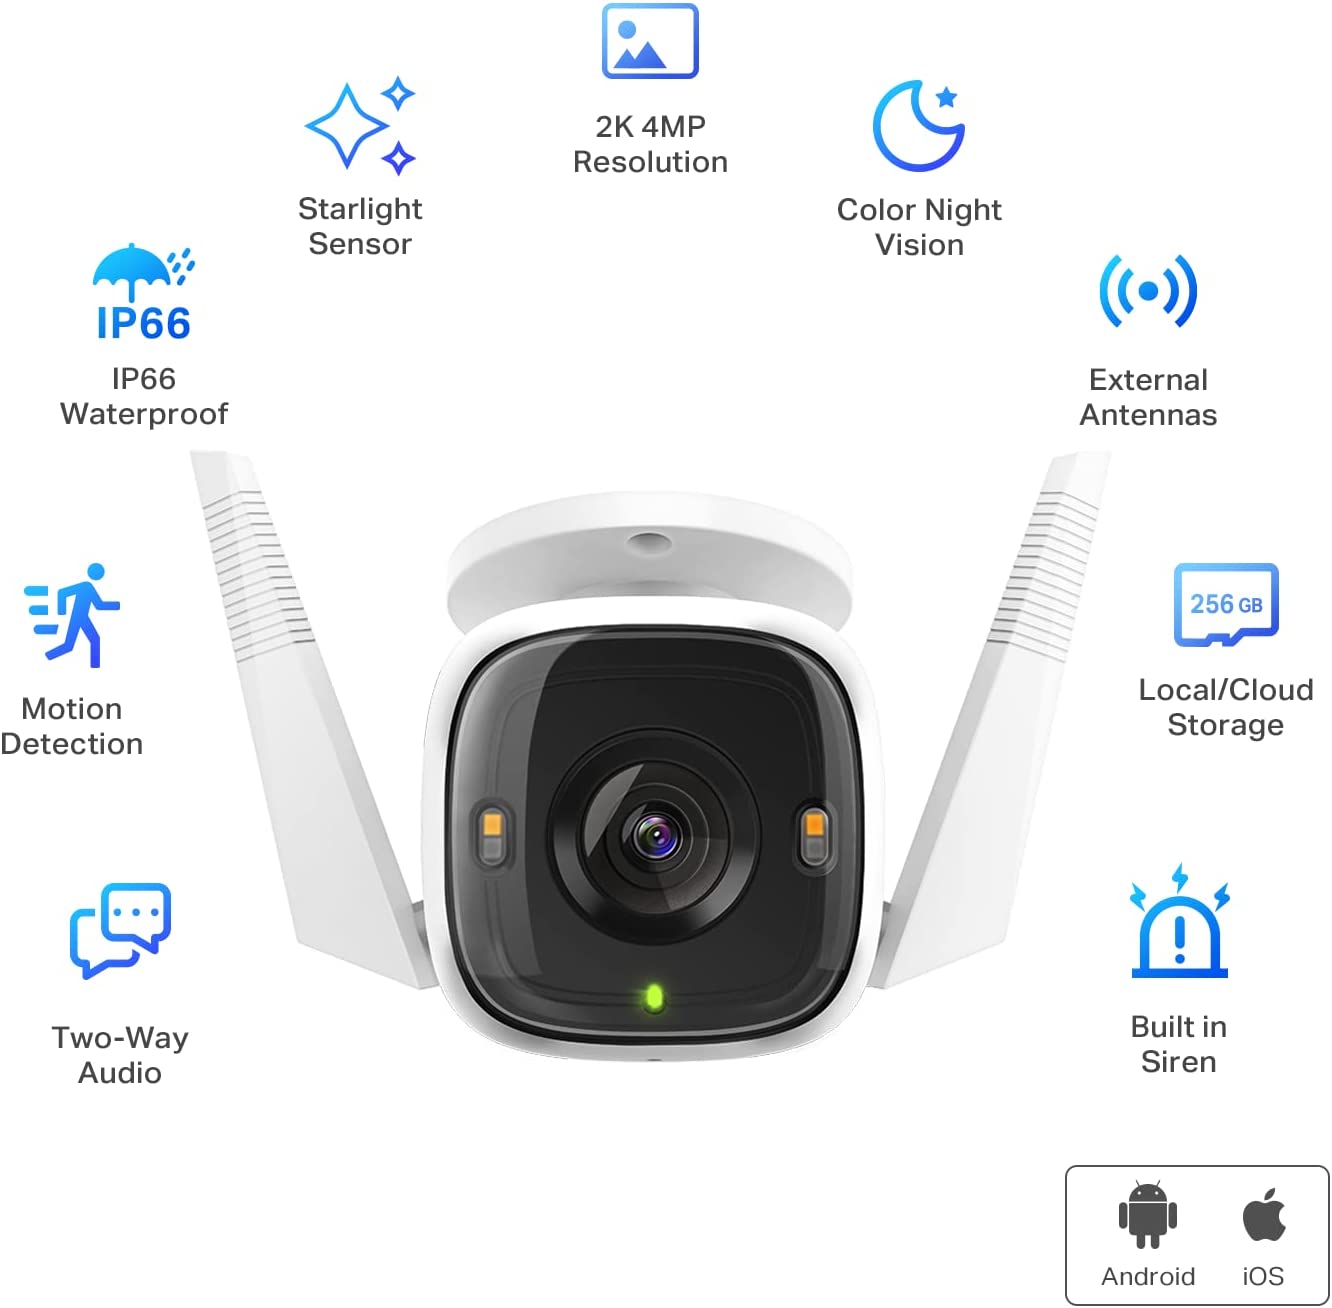 Camara de Seguridad Tapo Outdoor Security Wi-Fi Camera C320WS - Blanco